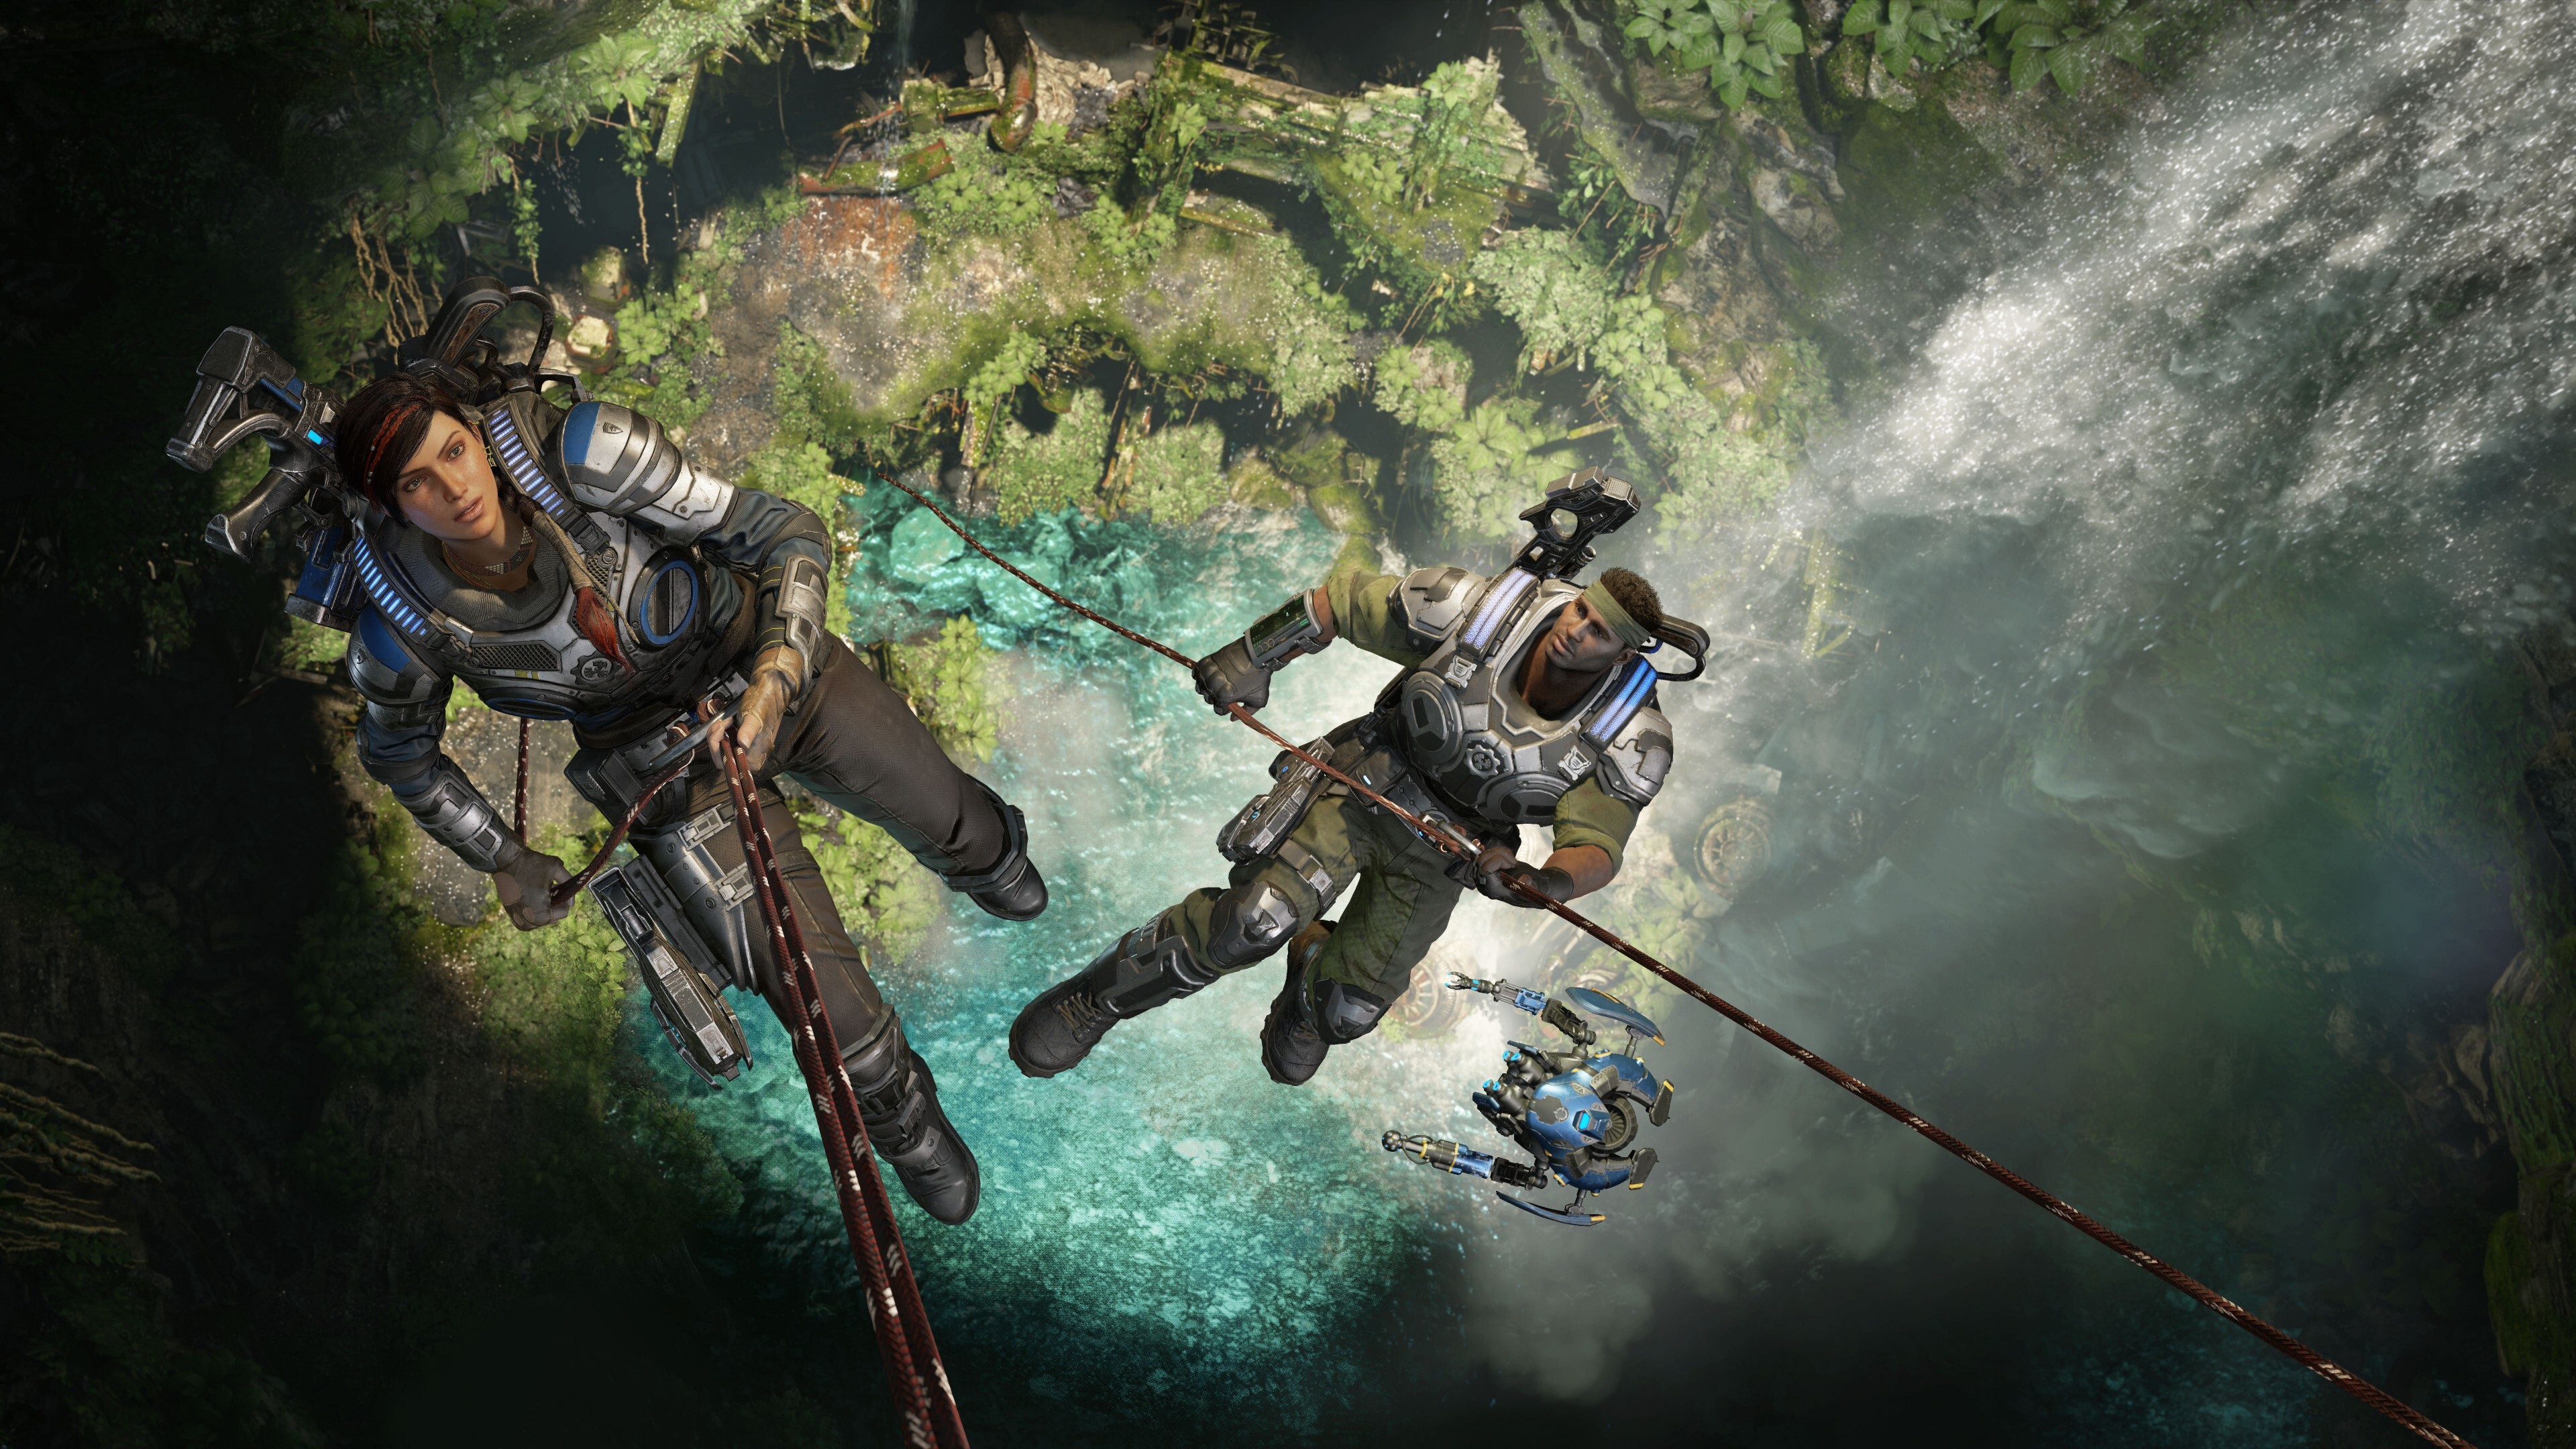 Gears of War 5 E3 2018, 4k gaming screenshots, Stunning visuals, Action-packed battles, 3840x2160 4K Desktop